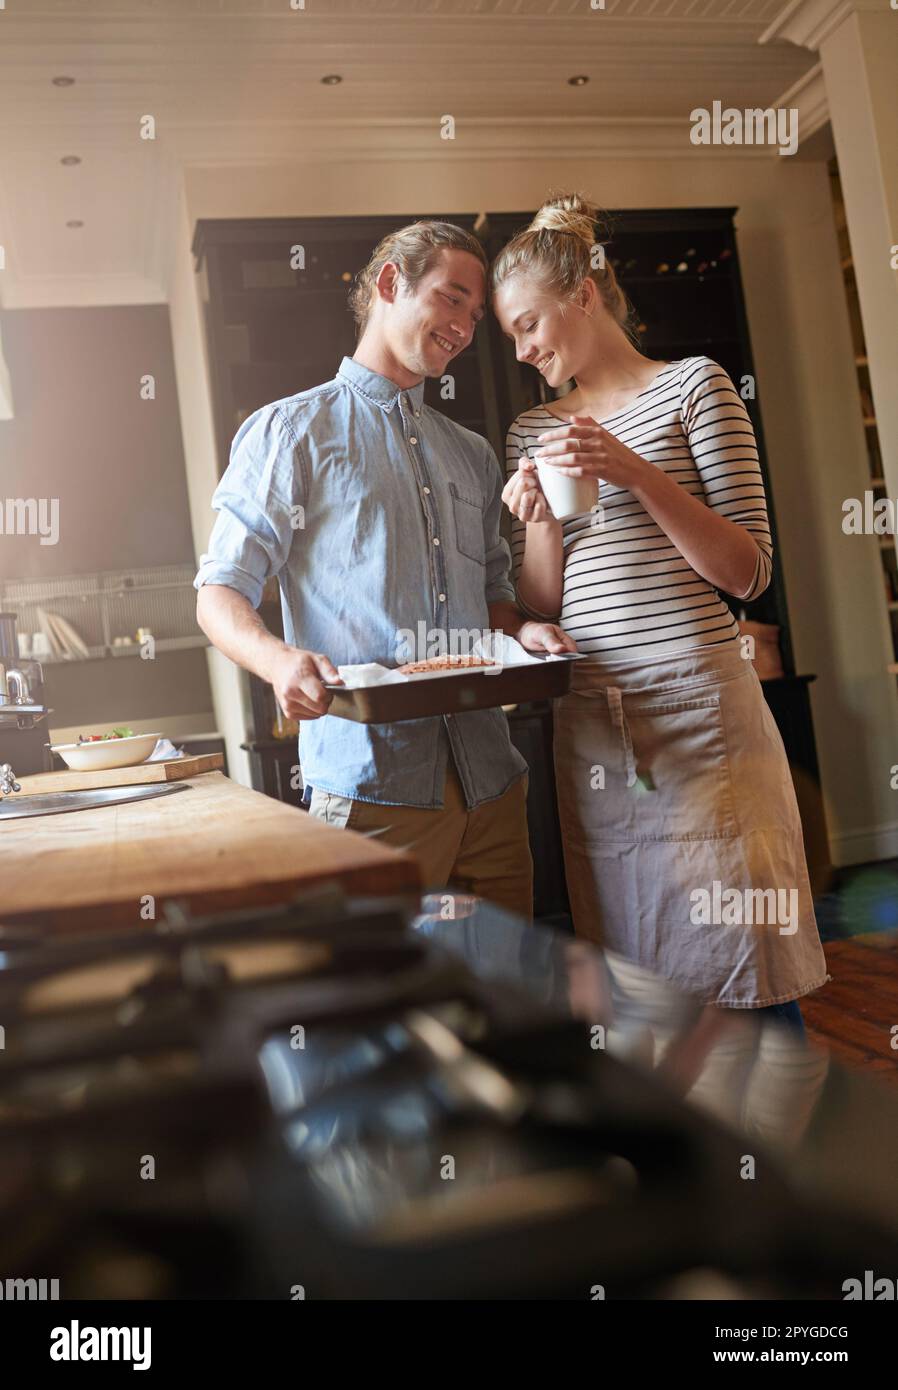 Backen ist Liebe, die sichtbar gemacht wird. Ein junges Paar, das sich in der Küche anfreundet. Stockfoto